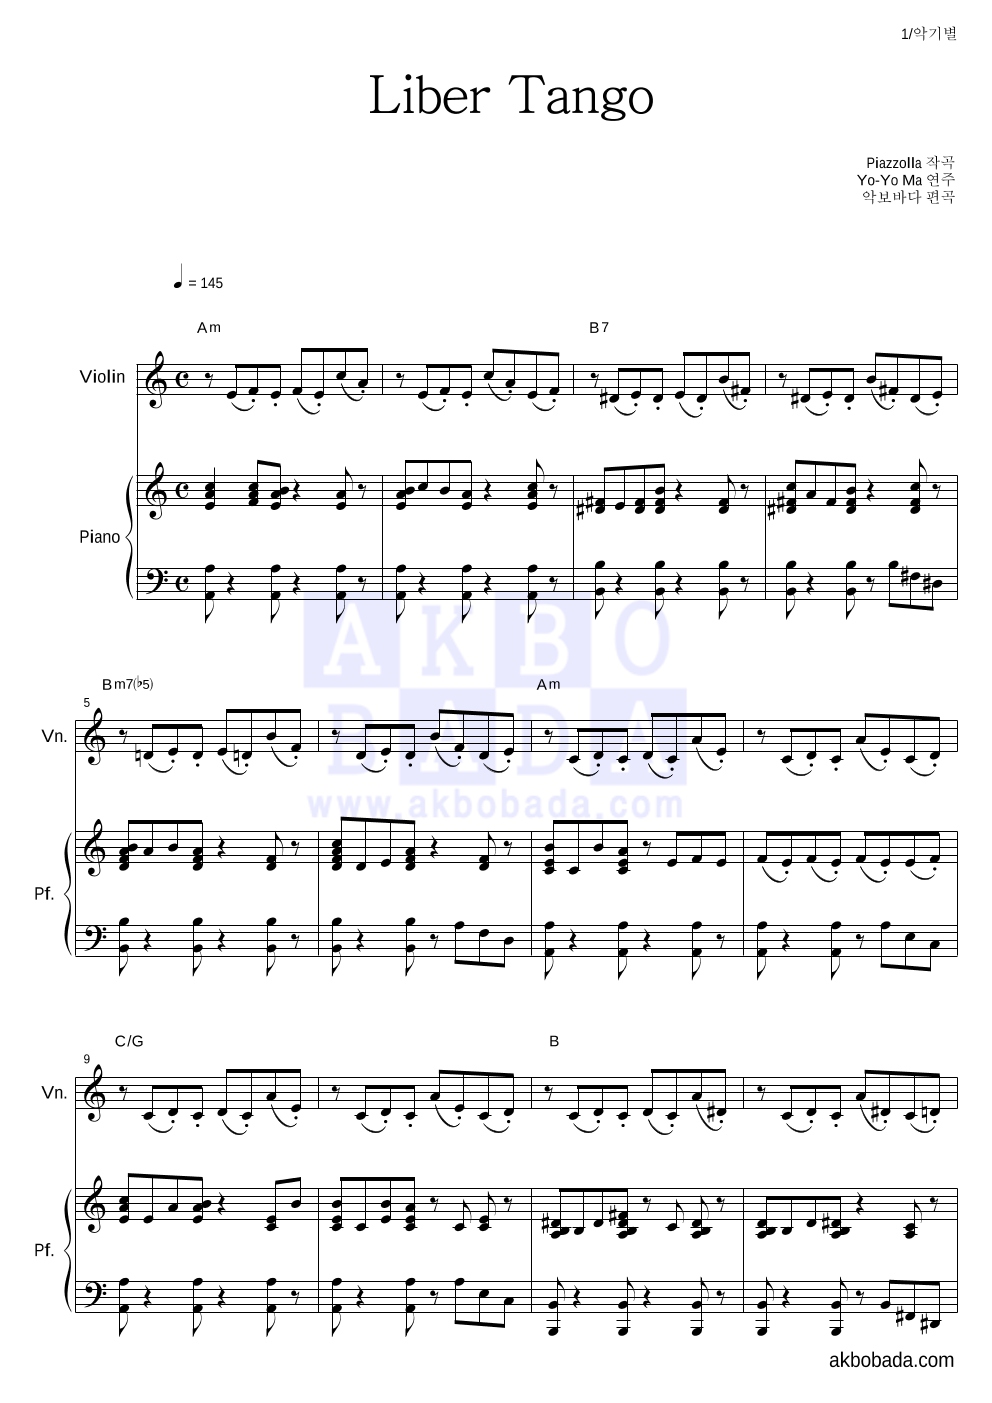 Yo-Yo Ma - Piazzolla - Libertango 바이올린&피아노 악보 